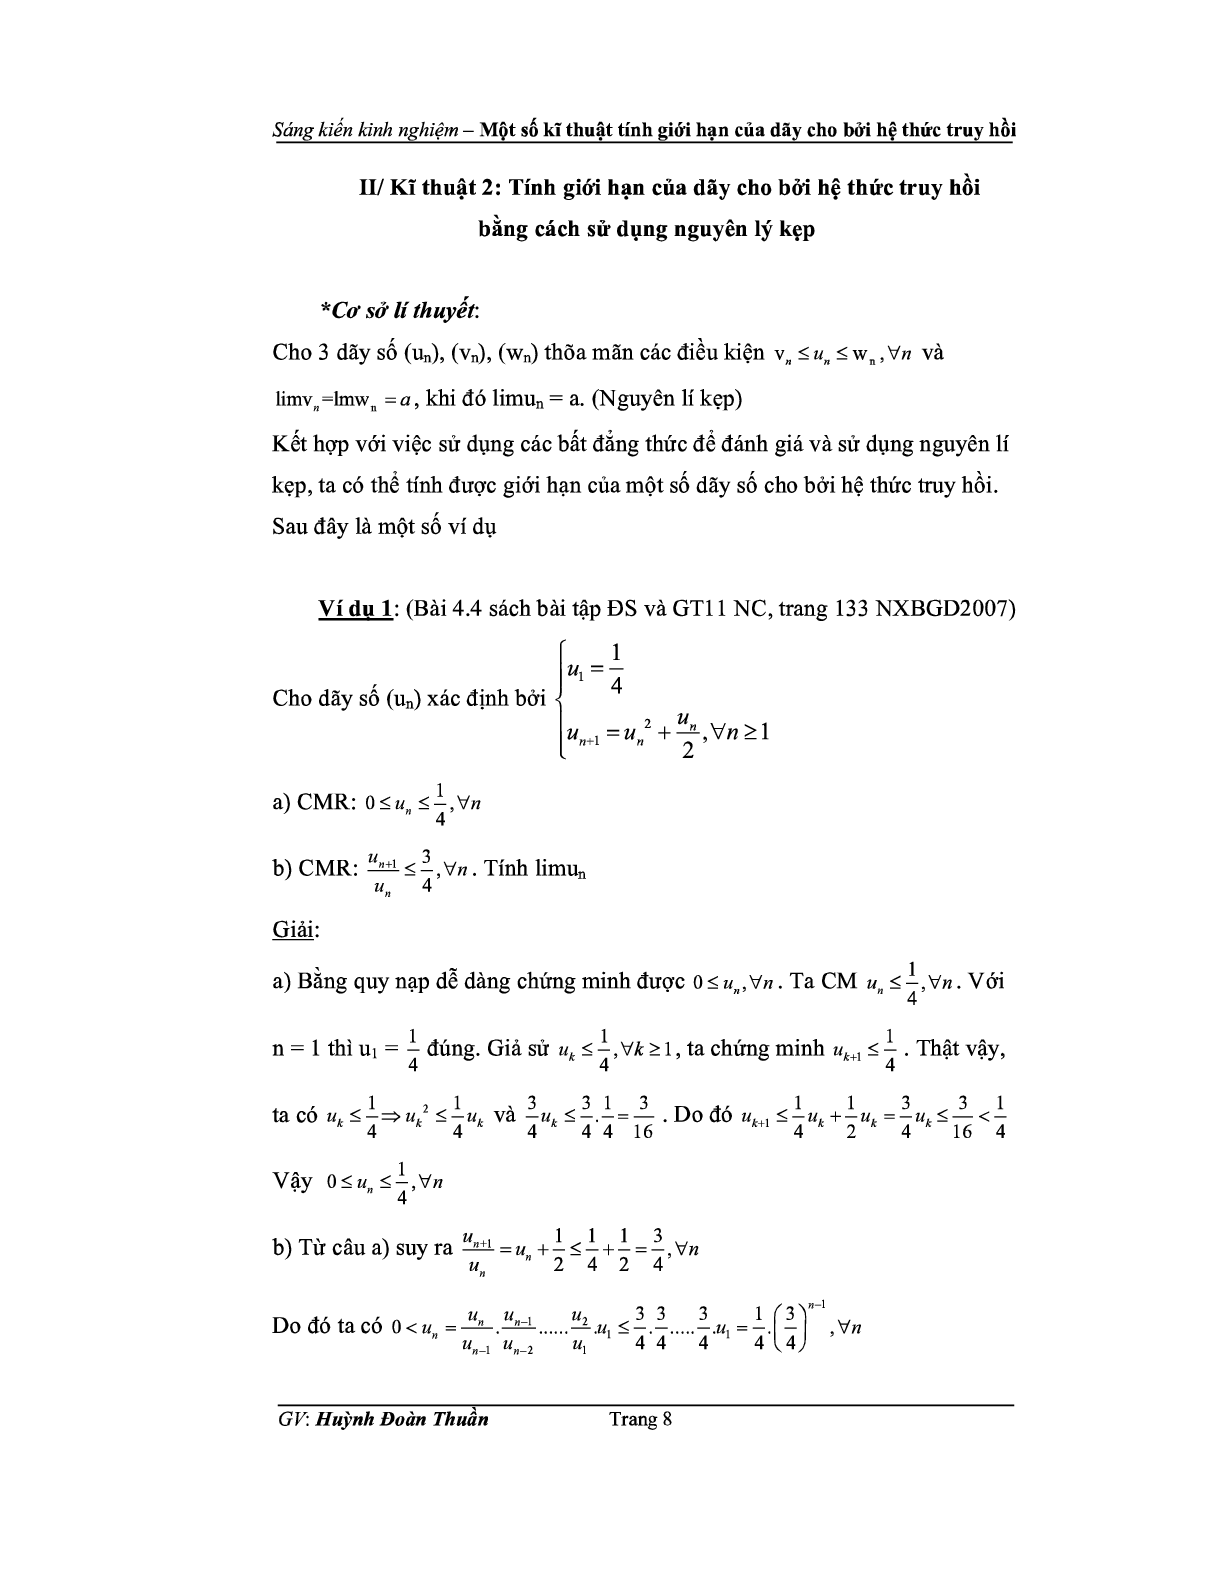 Kỹ thuật tính giới hạn của dãy số cho bời công thức truy hồi (trang 8)